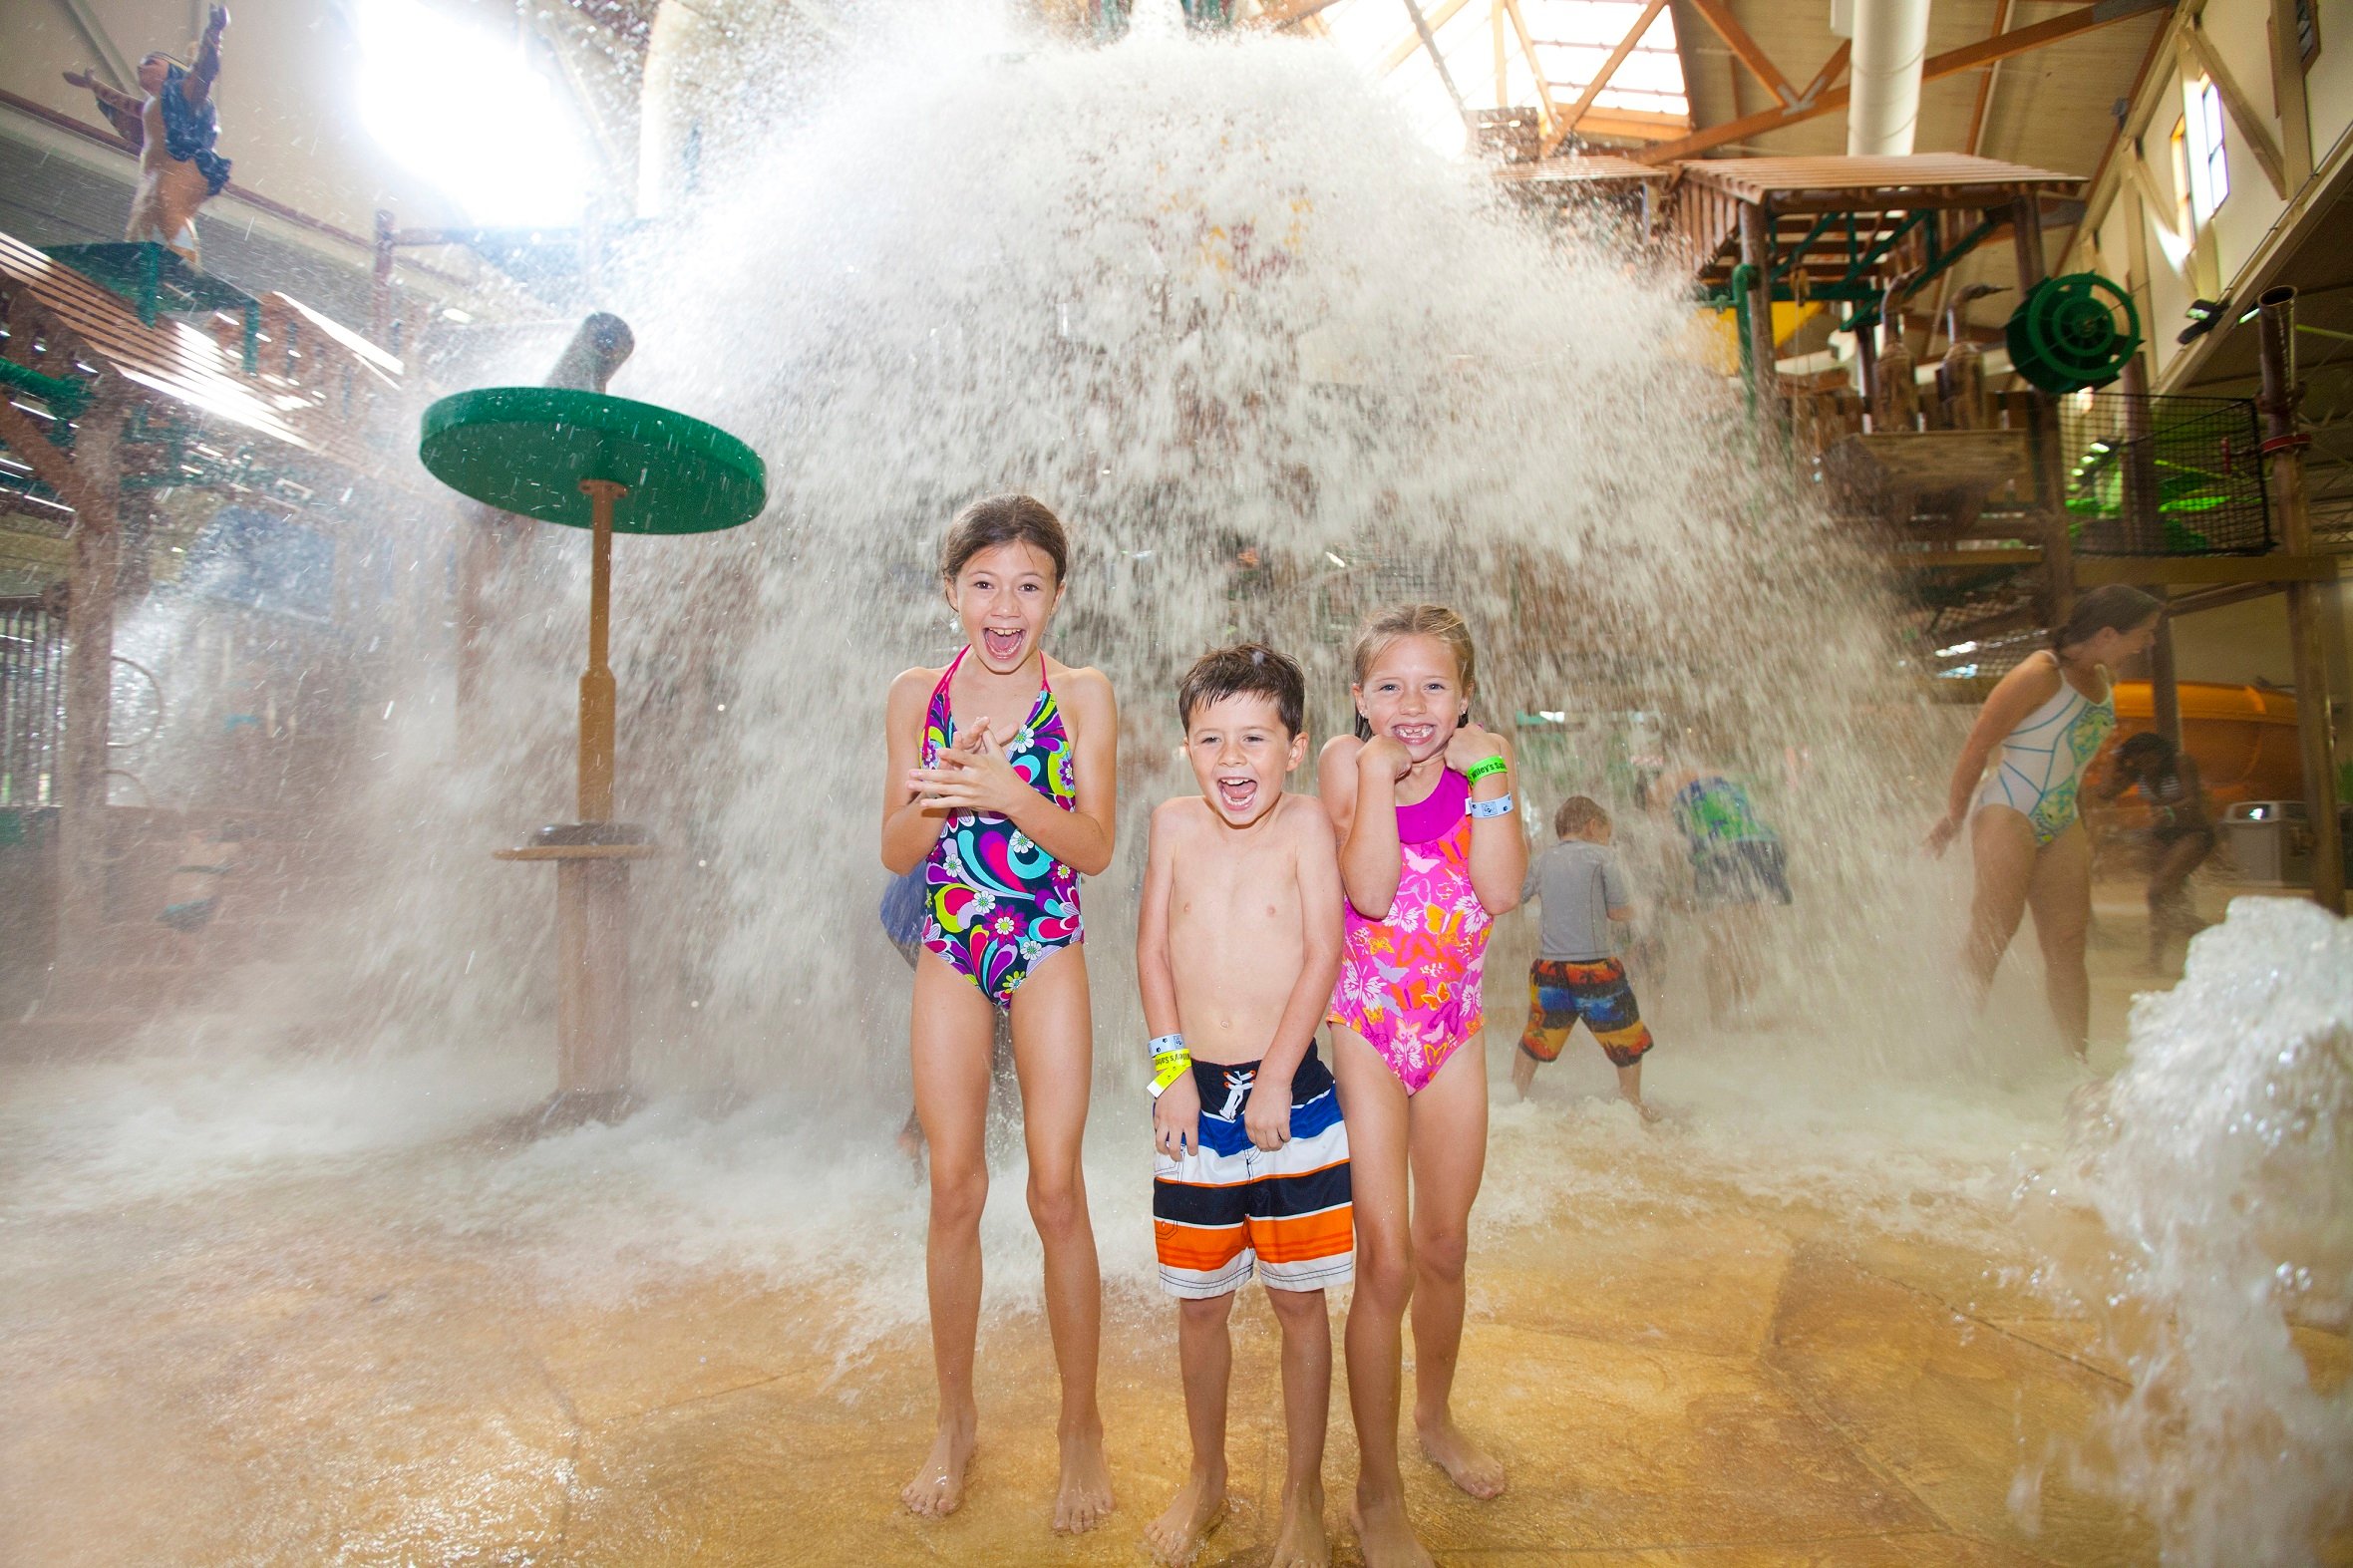 Make a Splash at Minnesota's Indoor Water Parks